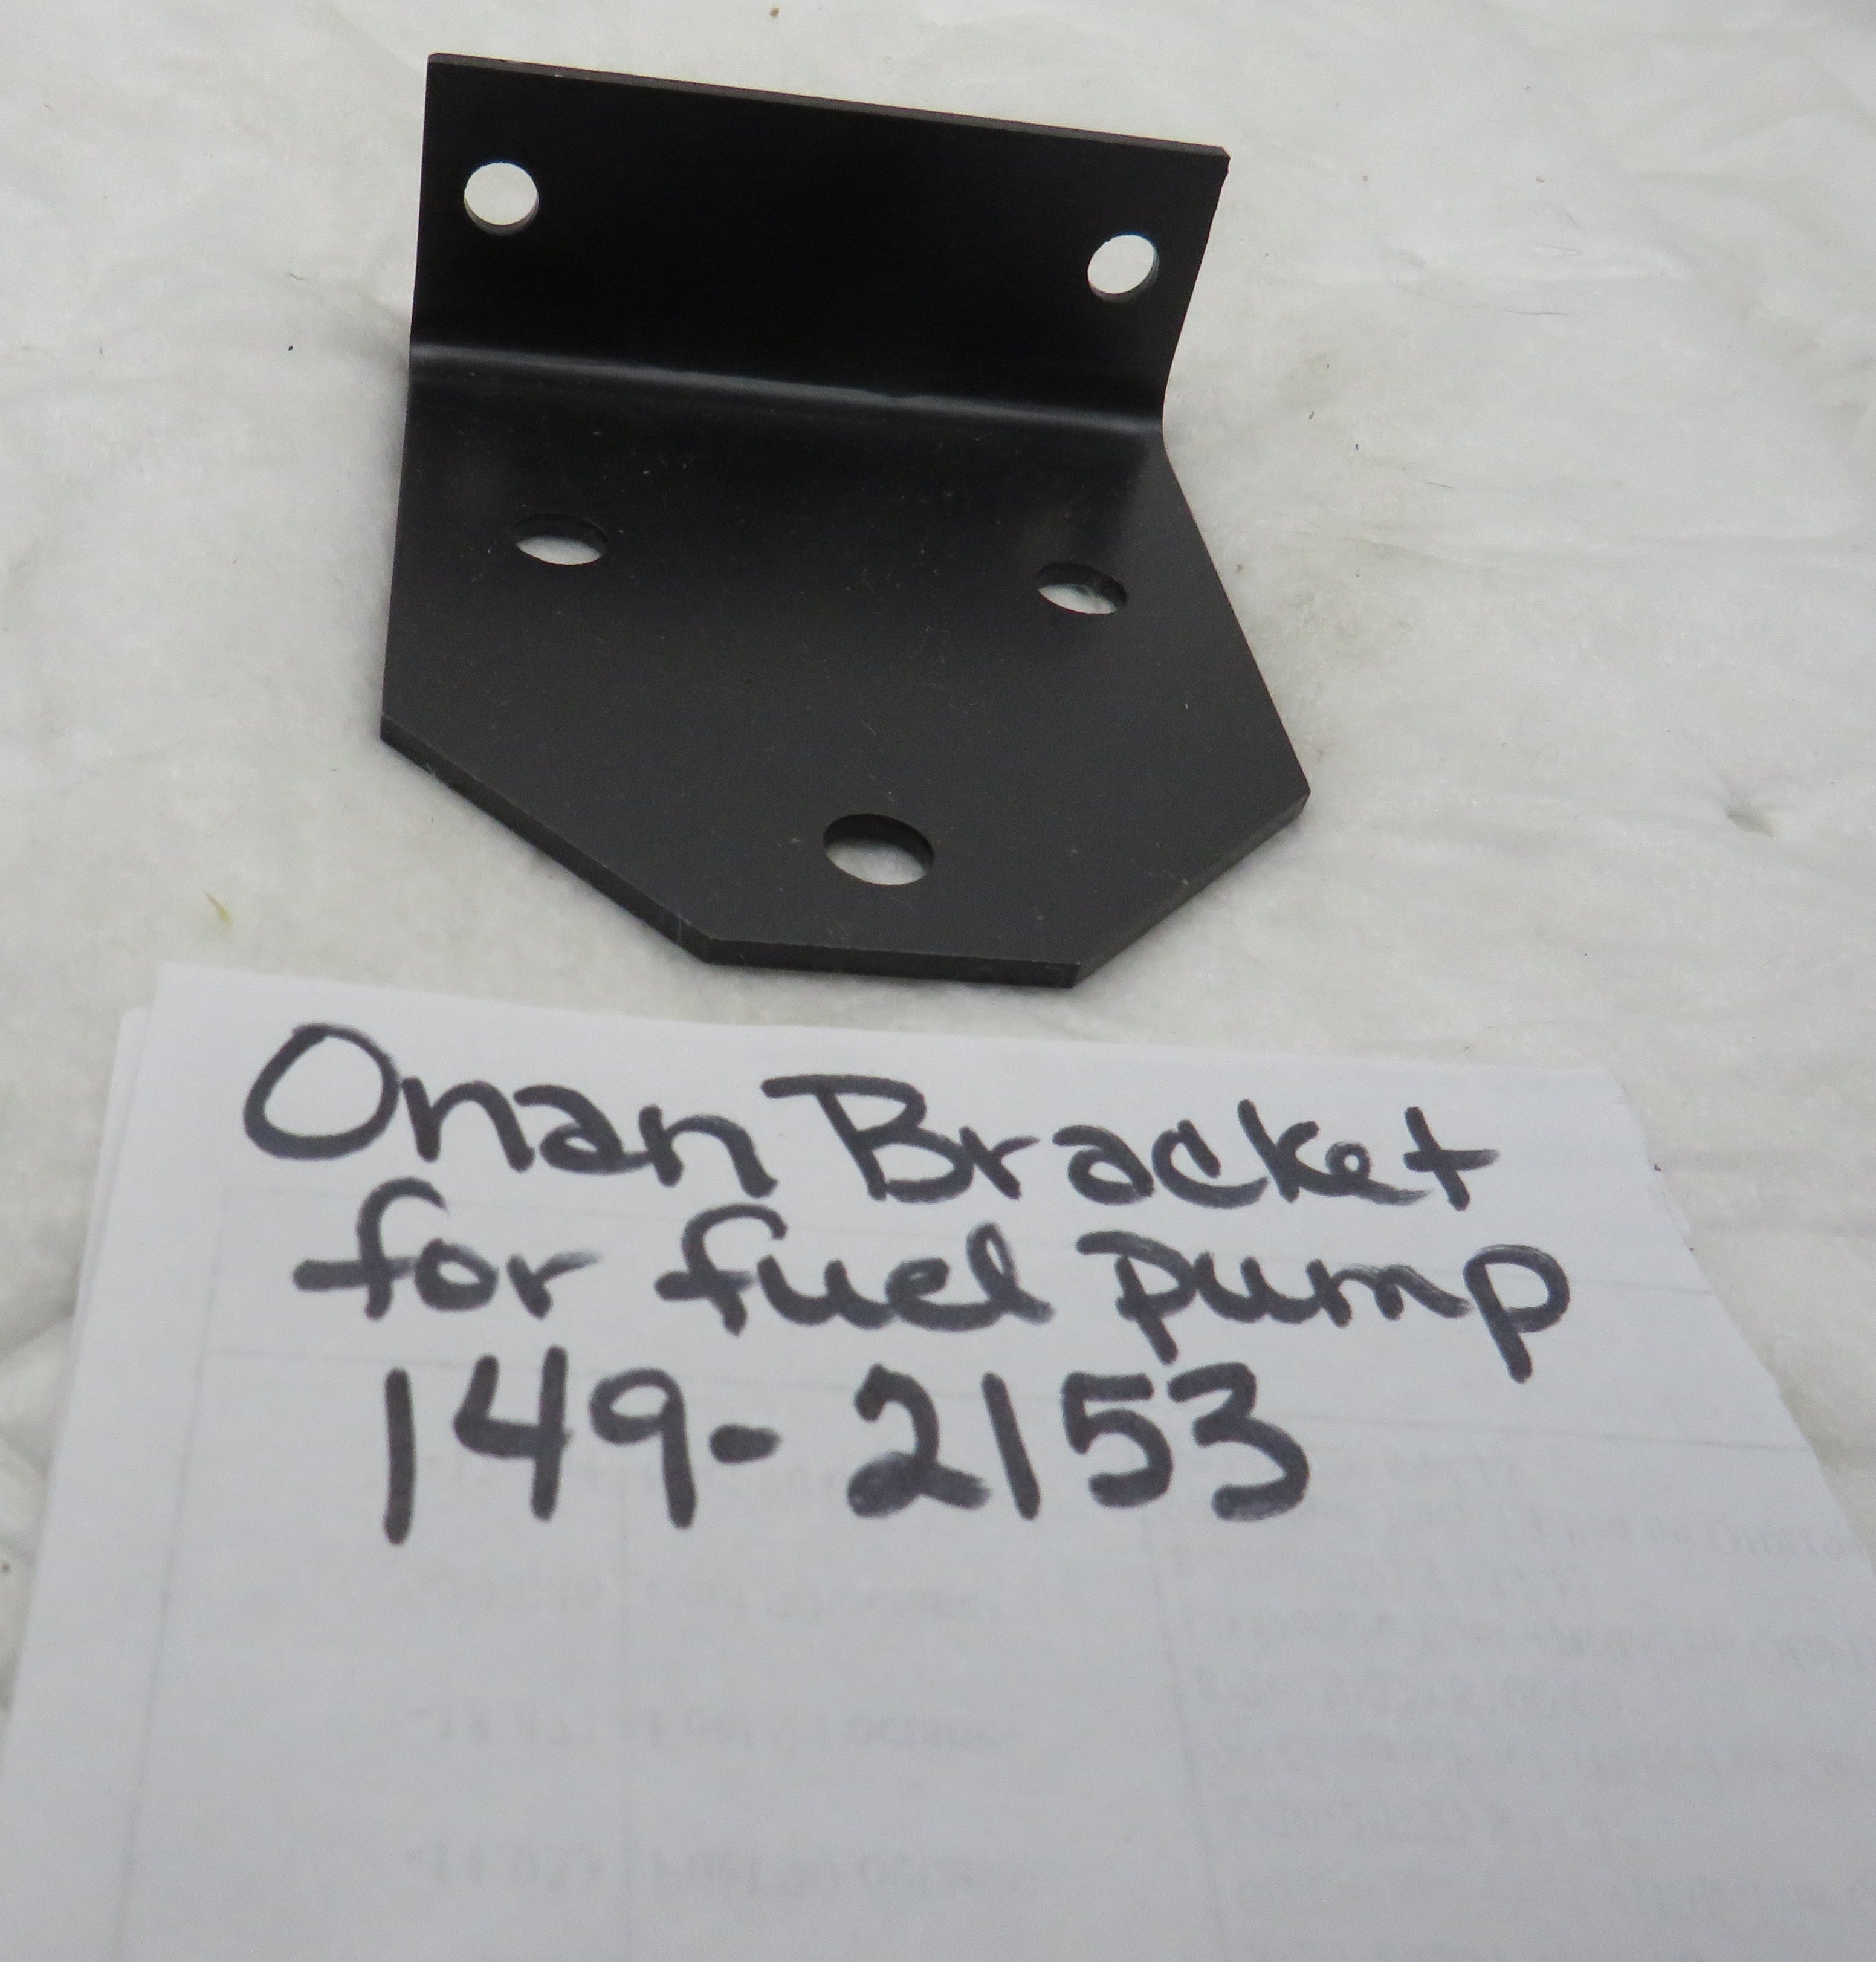 149-2153 Onan Bracket OBSOLETE for Fuel Pump 149-2159 